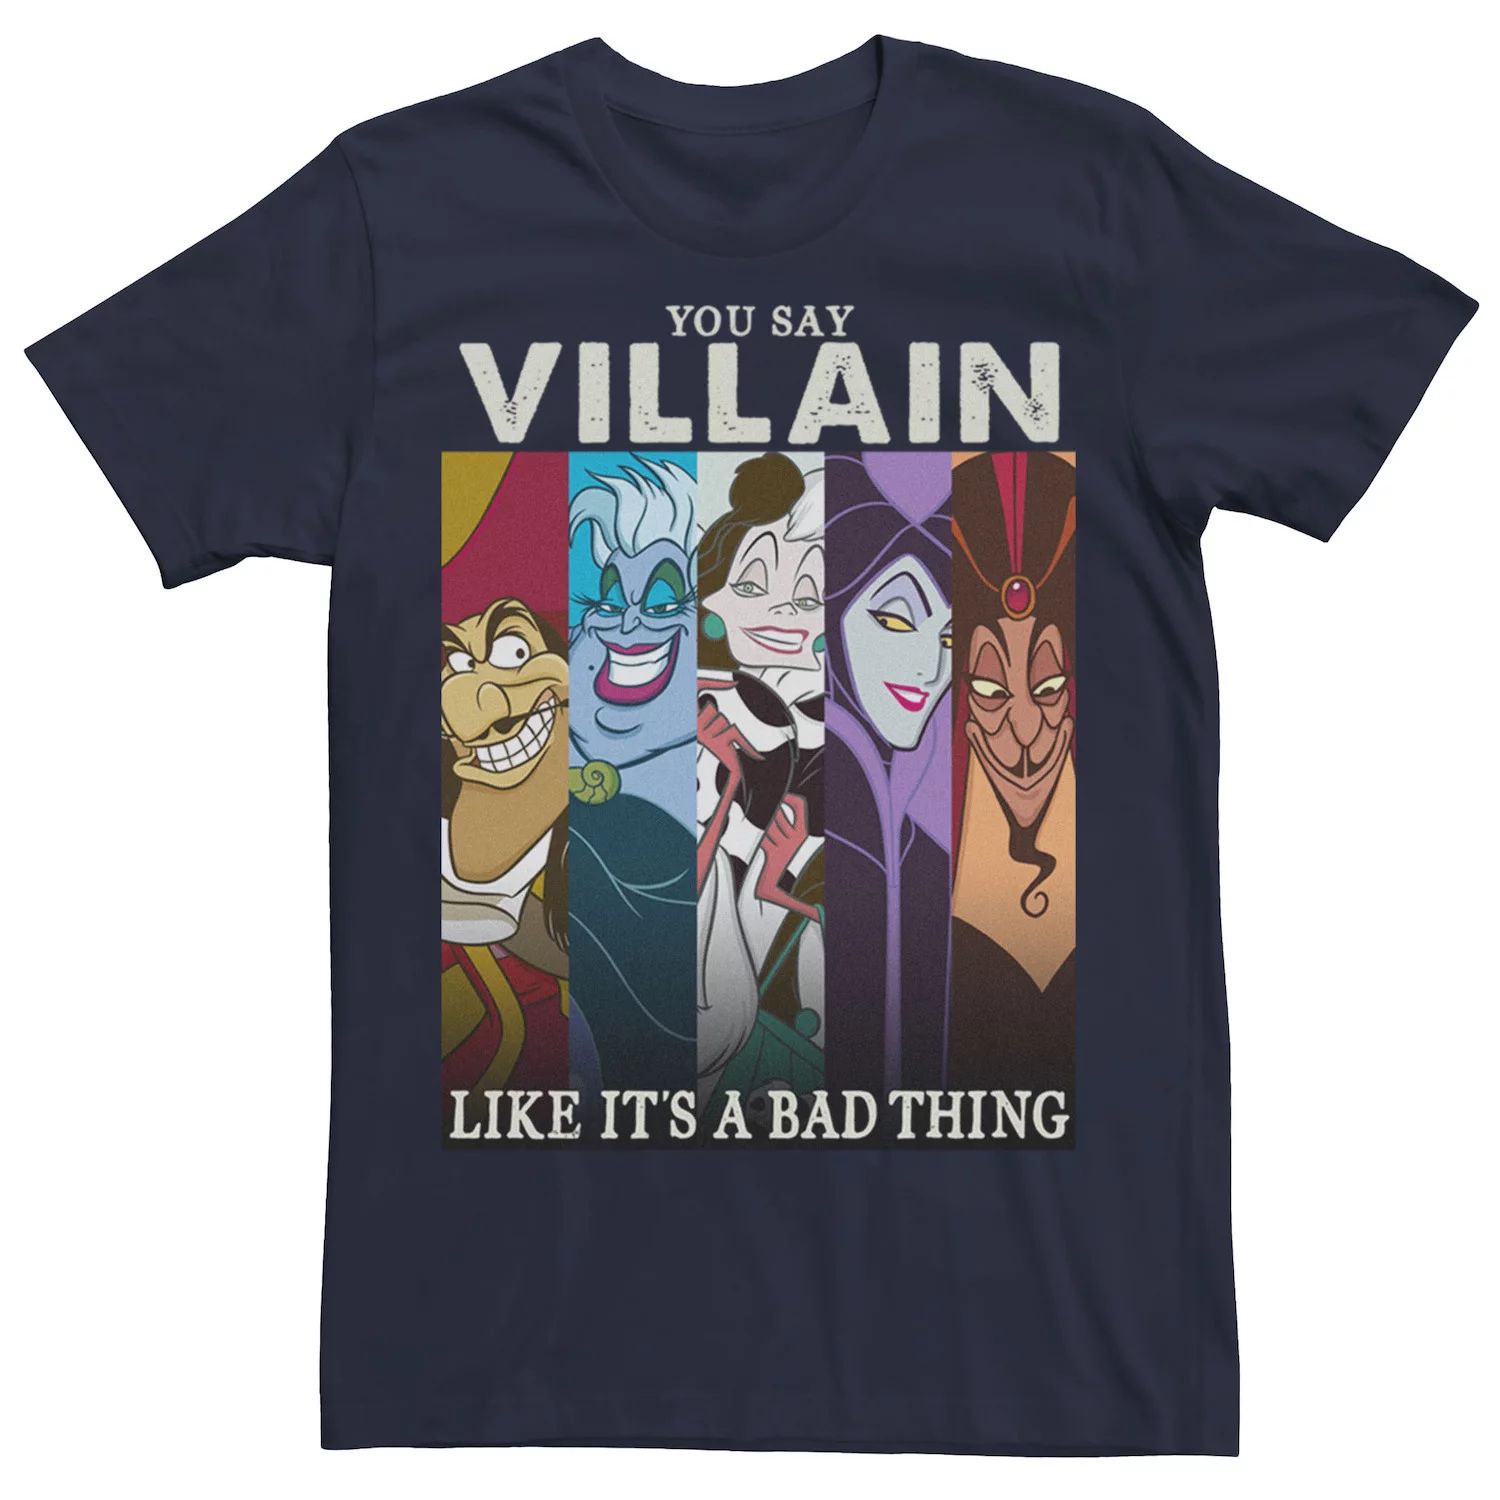 Мужская футболка Villains Like It A Bad Thing Group Shot Disney, синий